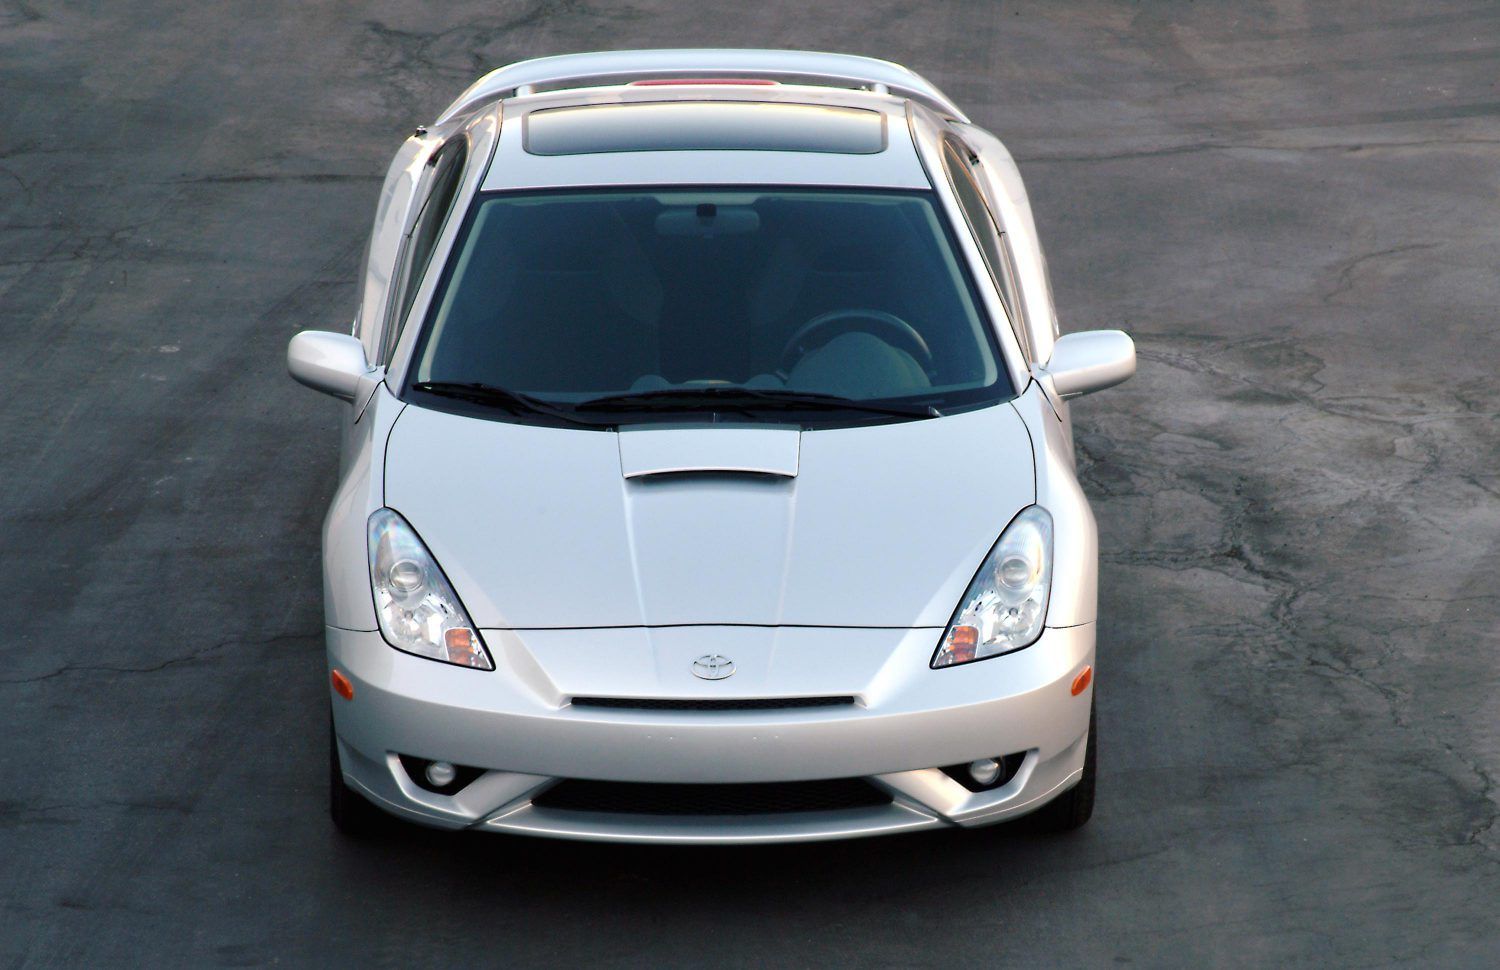 Silver 2005 Toyota Celica